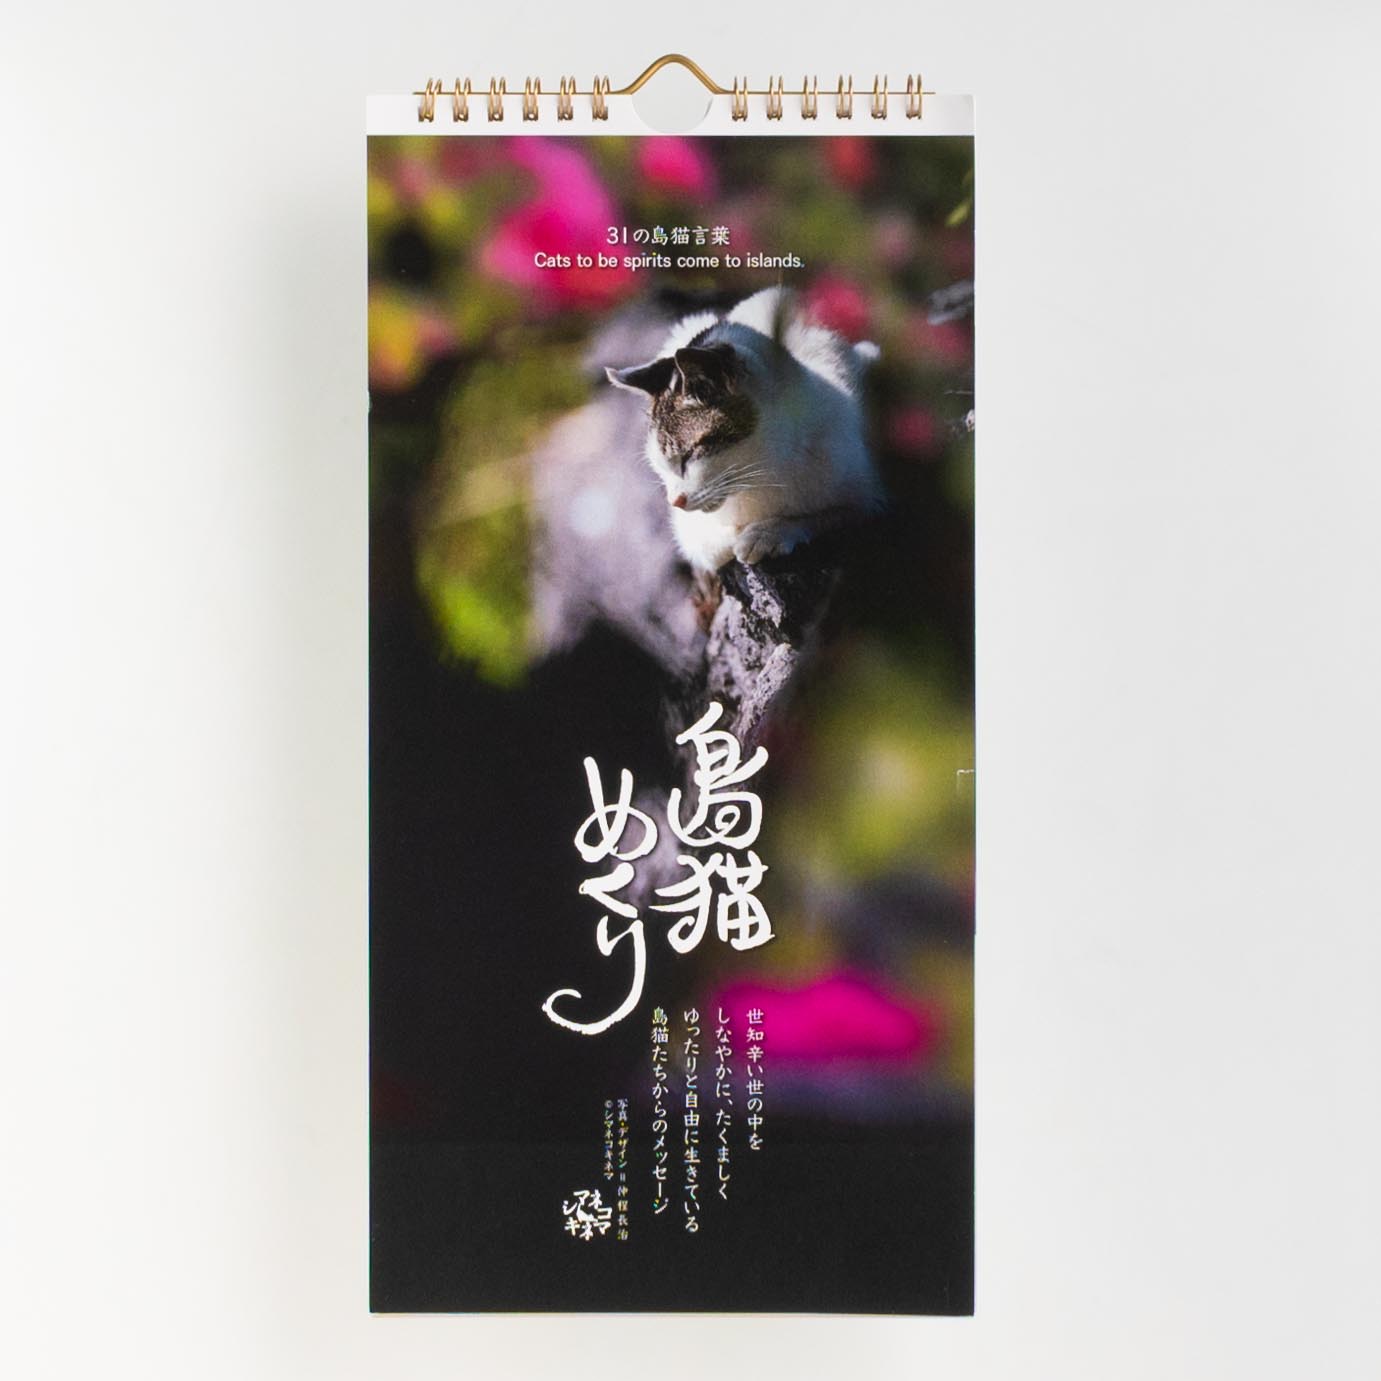 「松島  由布子 様」製作のオリジナルカレンダー